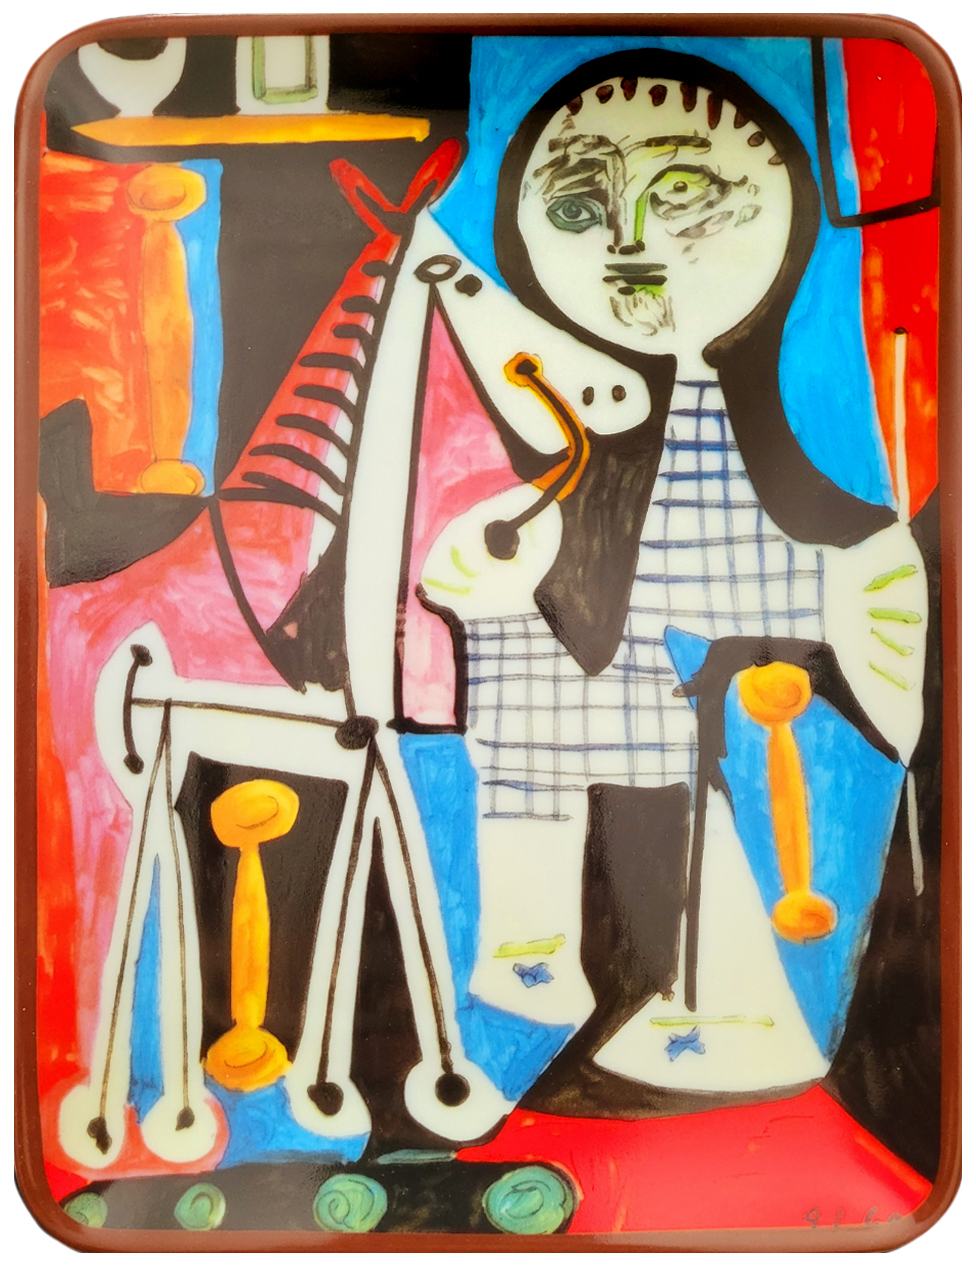 Pablo Picasso (1881-1973), Ceramics